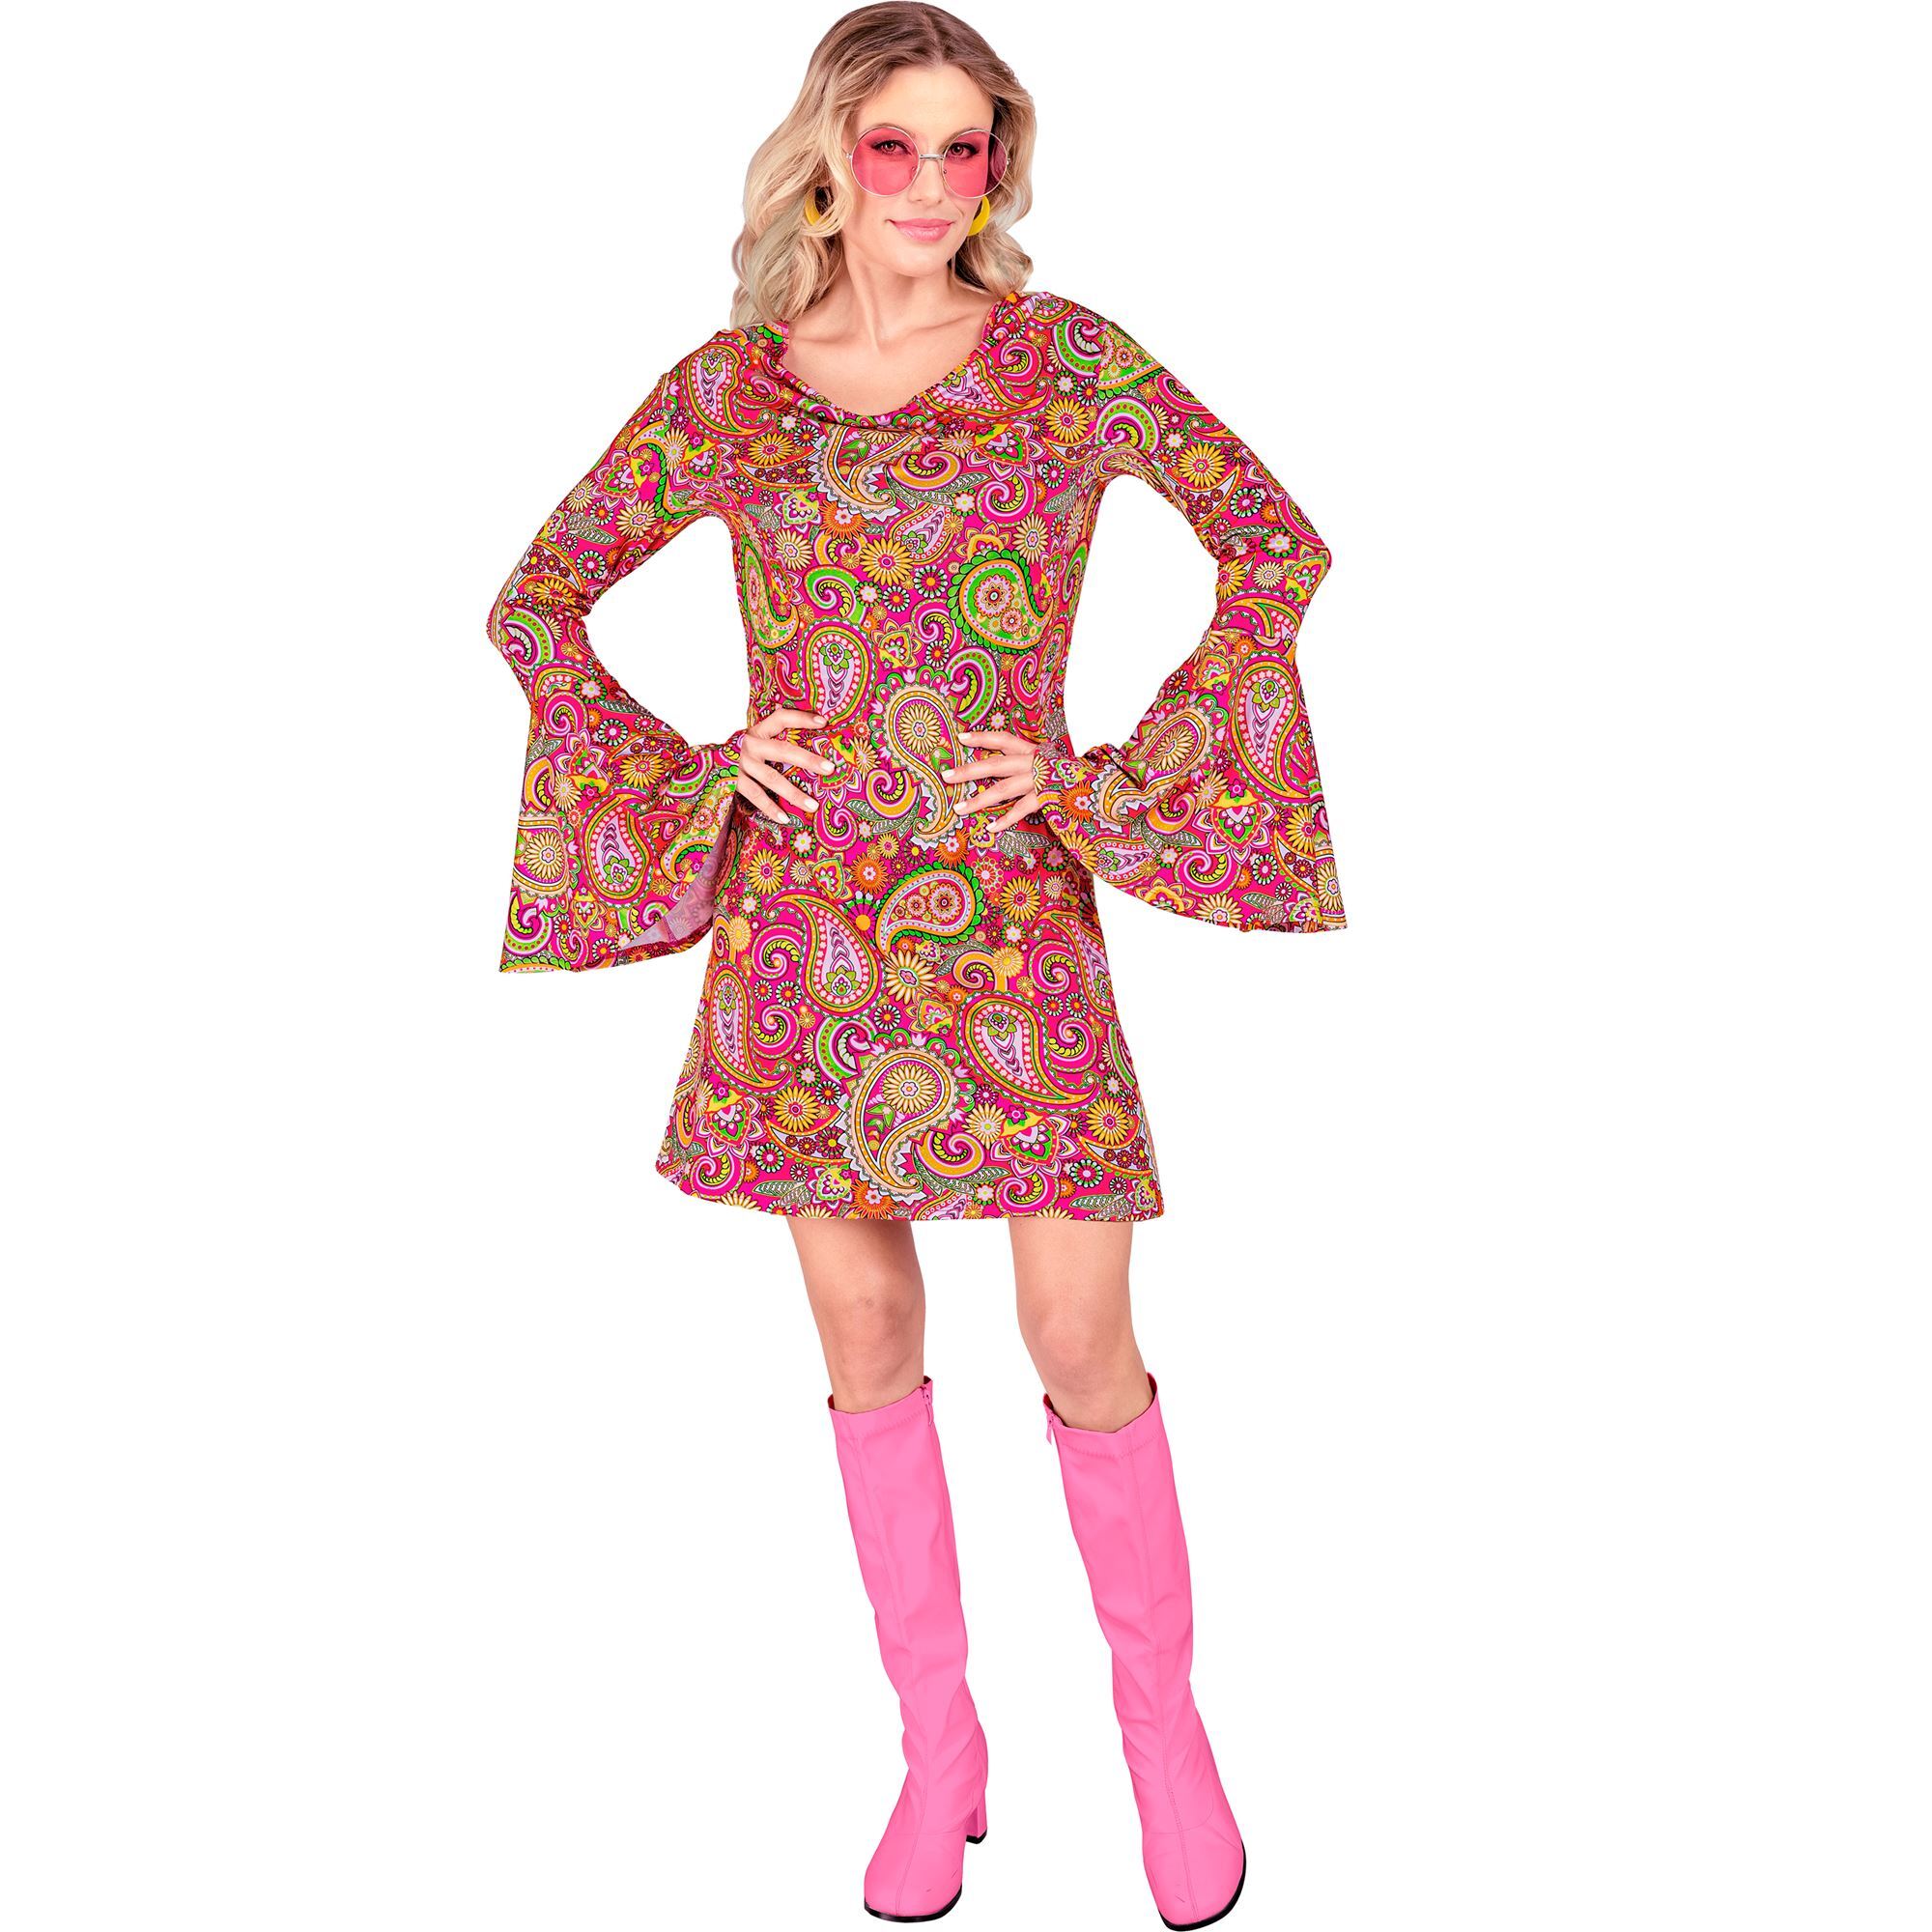 Retro chic jurk sixties disco met paisley print voor het ultieme dans feestje